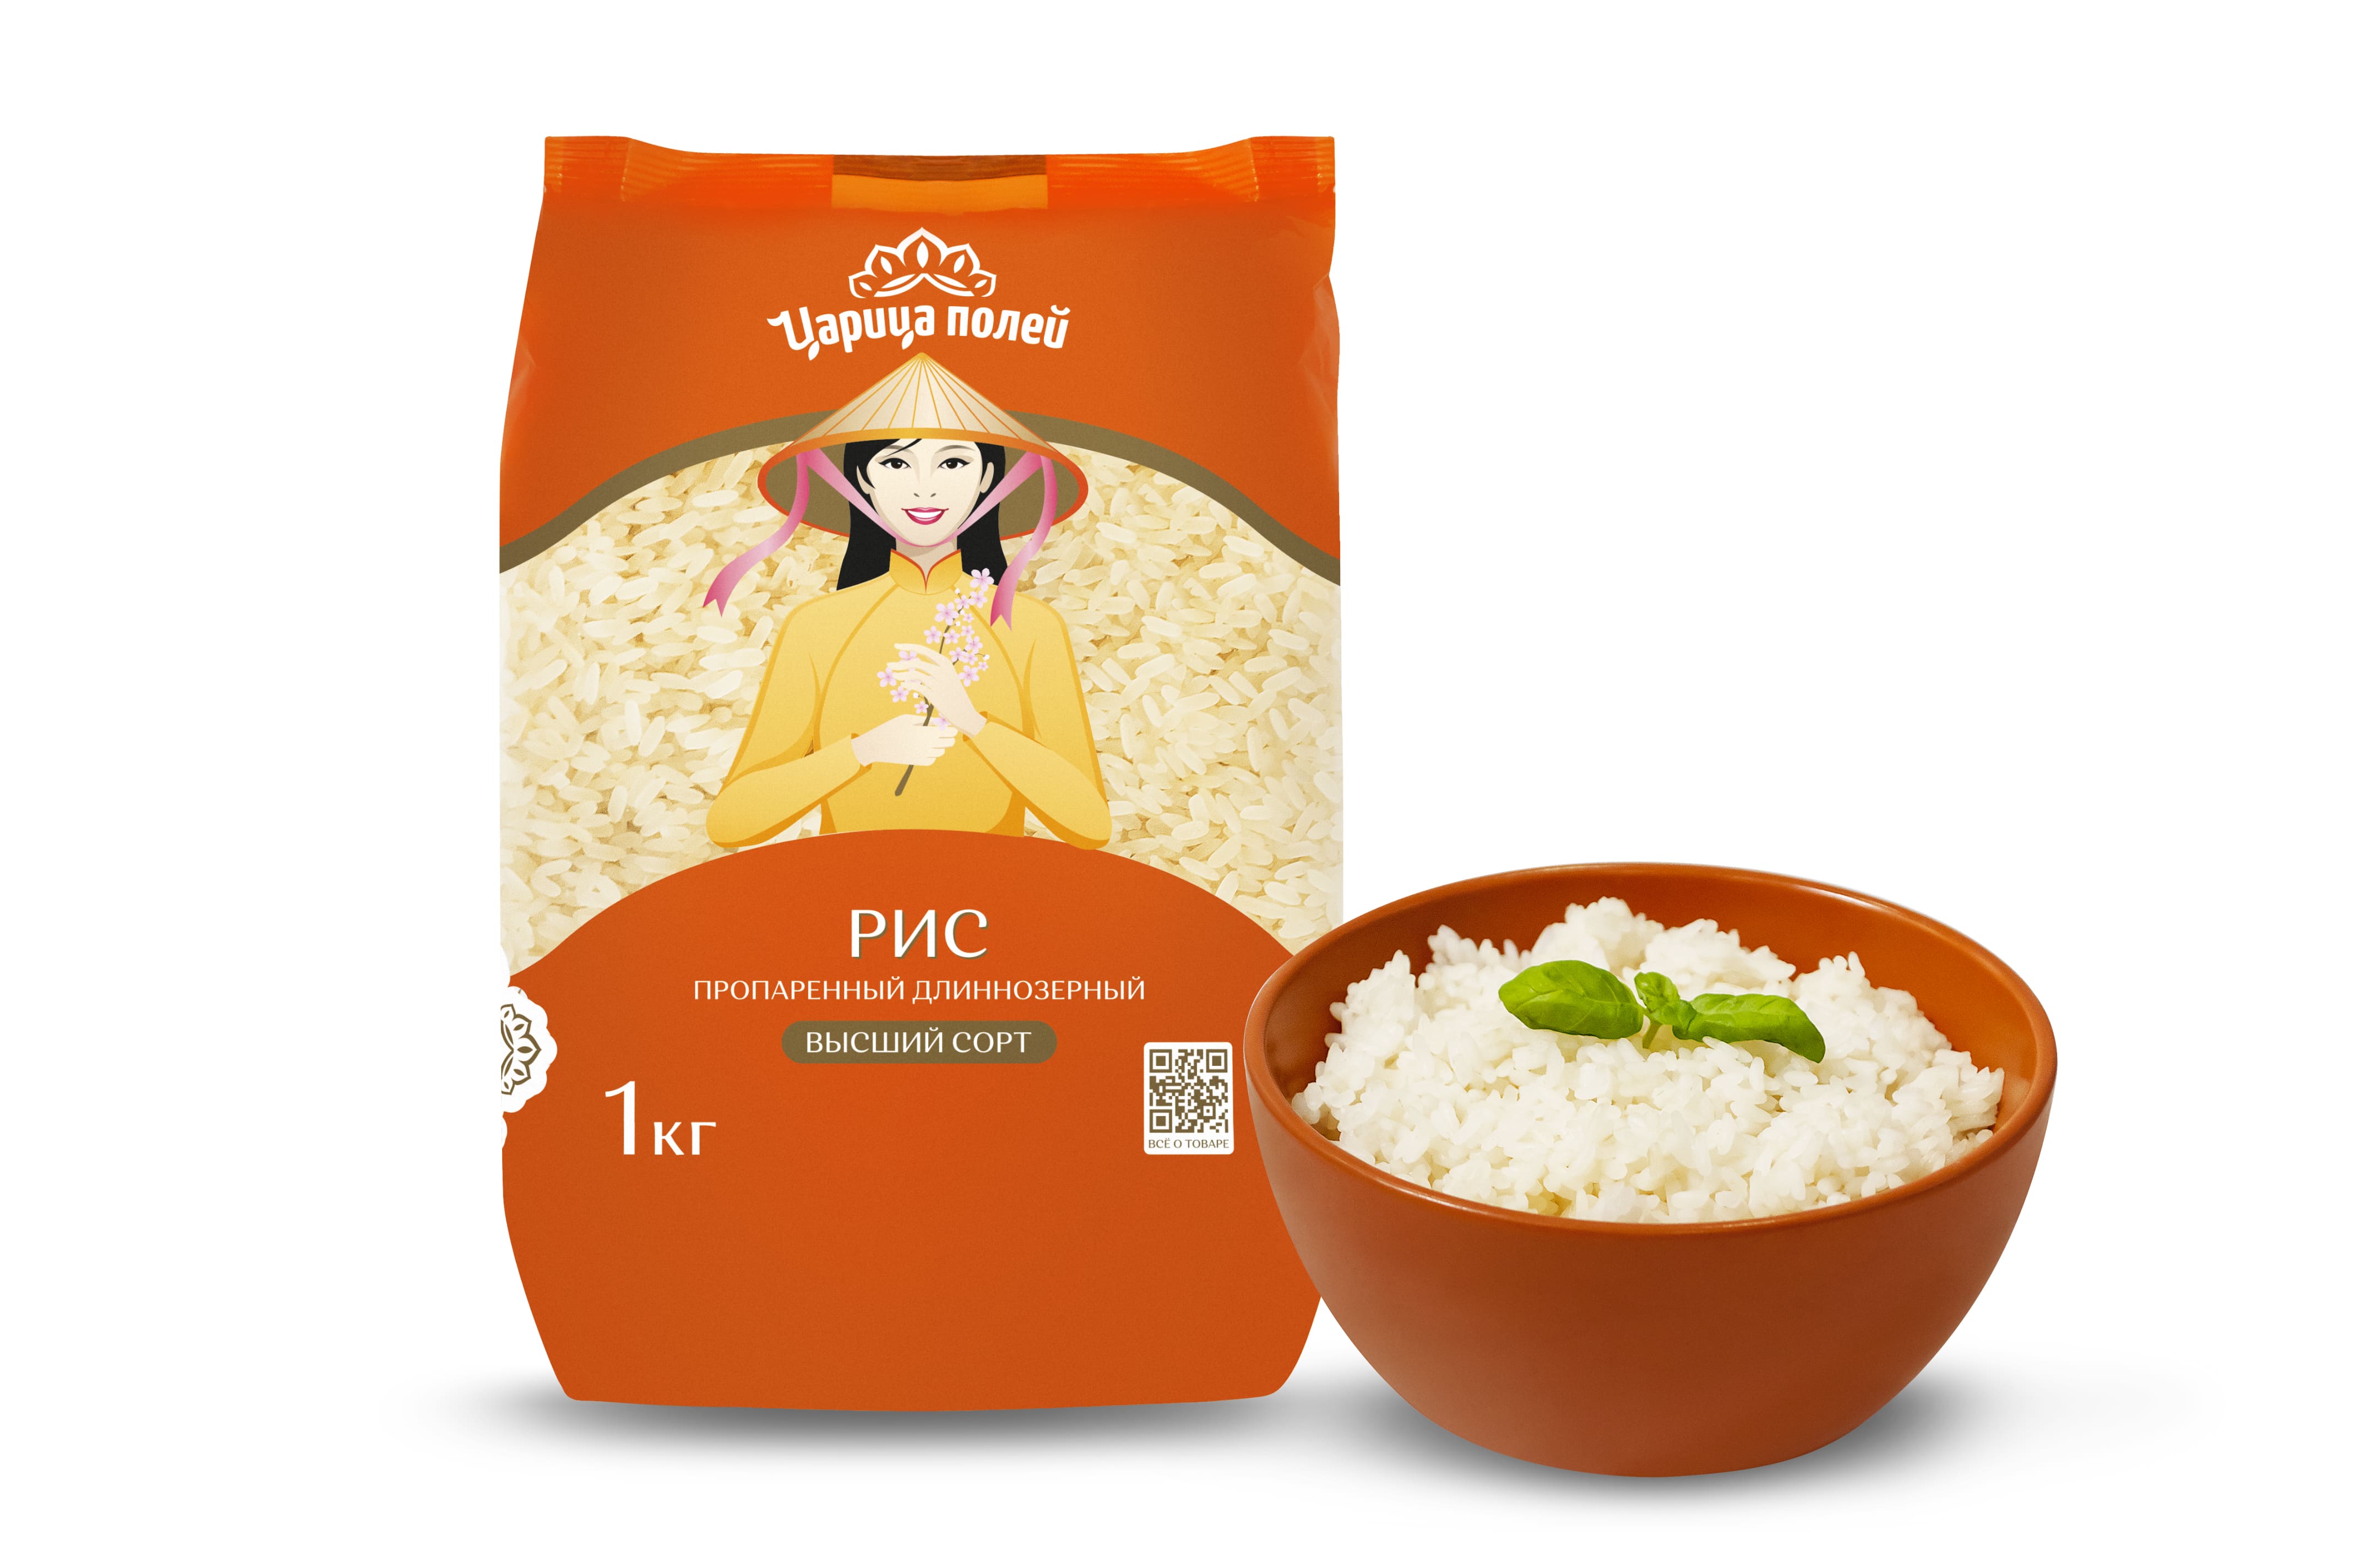 Что будет если есть рис каждый день — какие изменения произойдут в организме